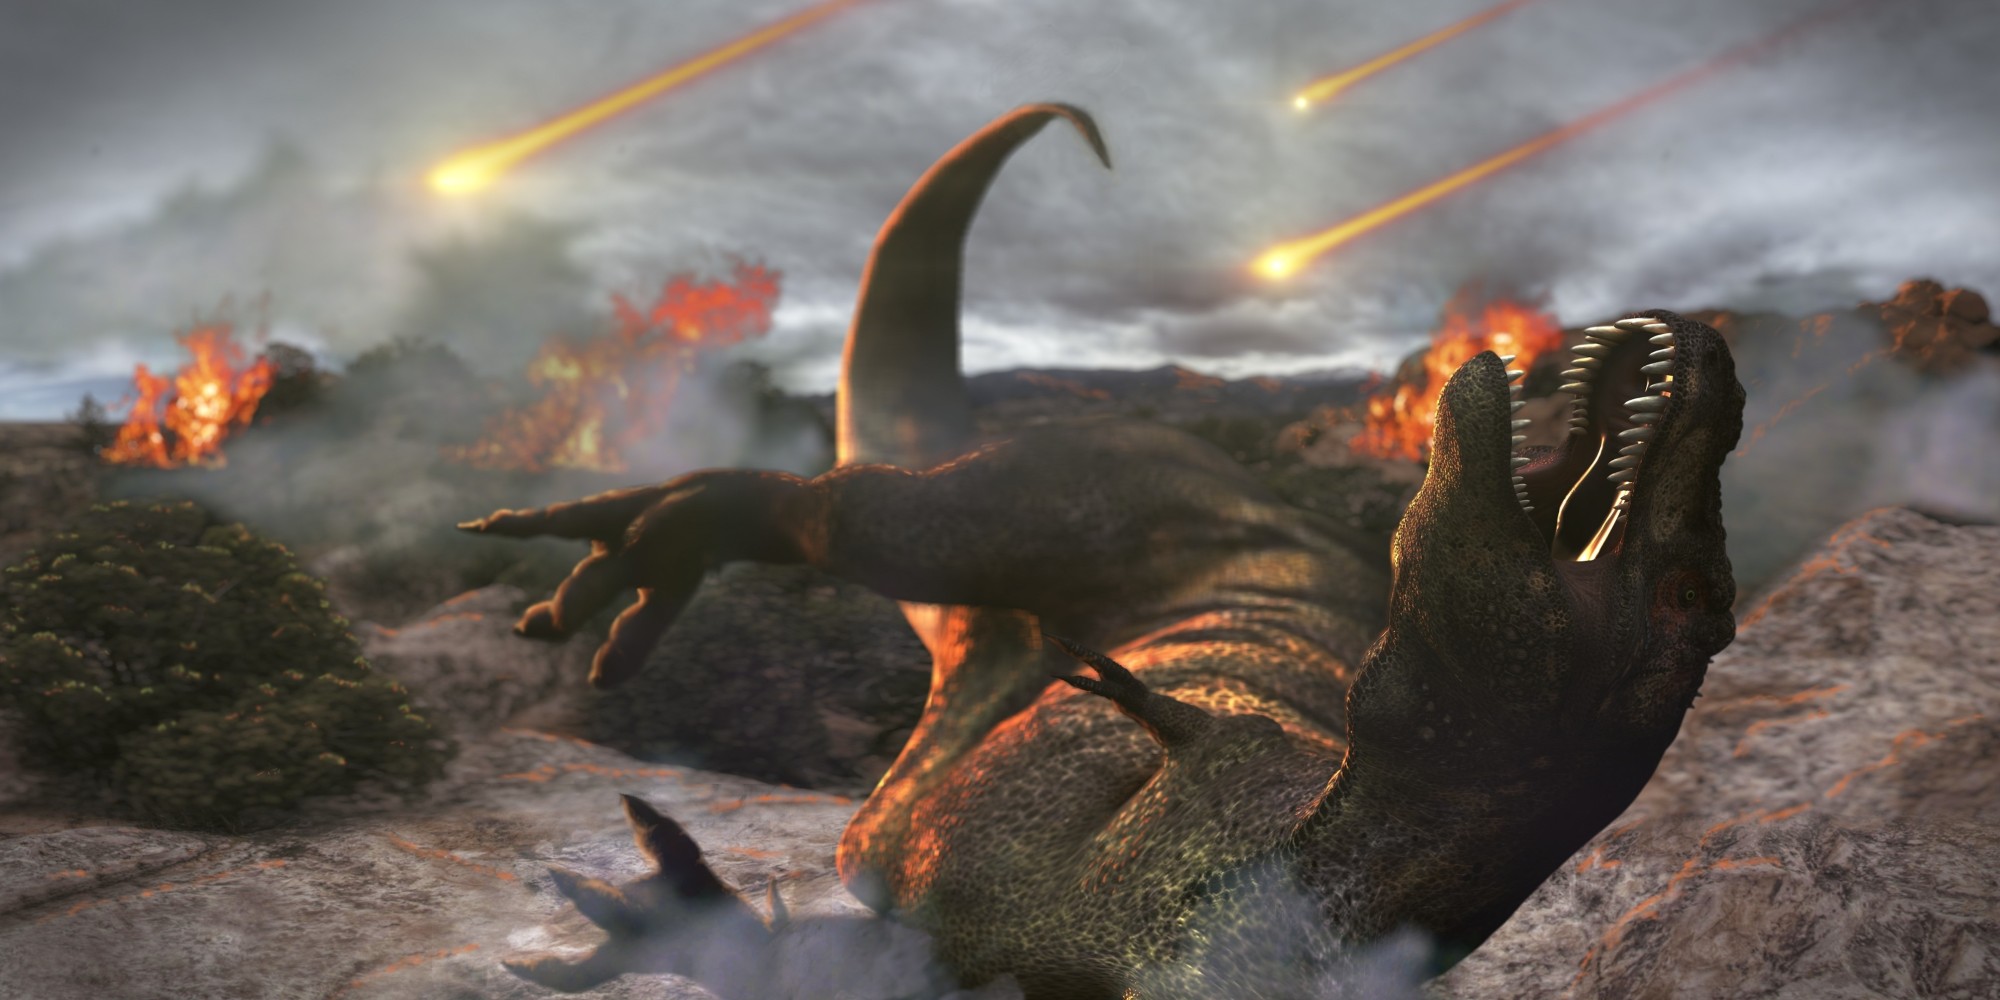 İşte Milyonlarca Yıl Önce Dinozorları ve Dünya’nın Yarısını Yok Eden Meteor